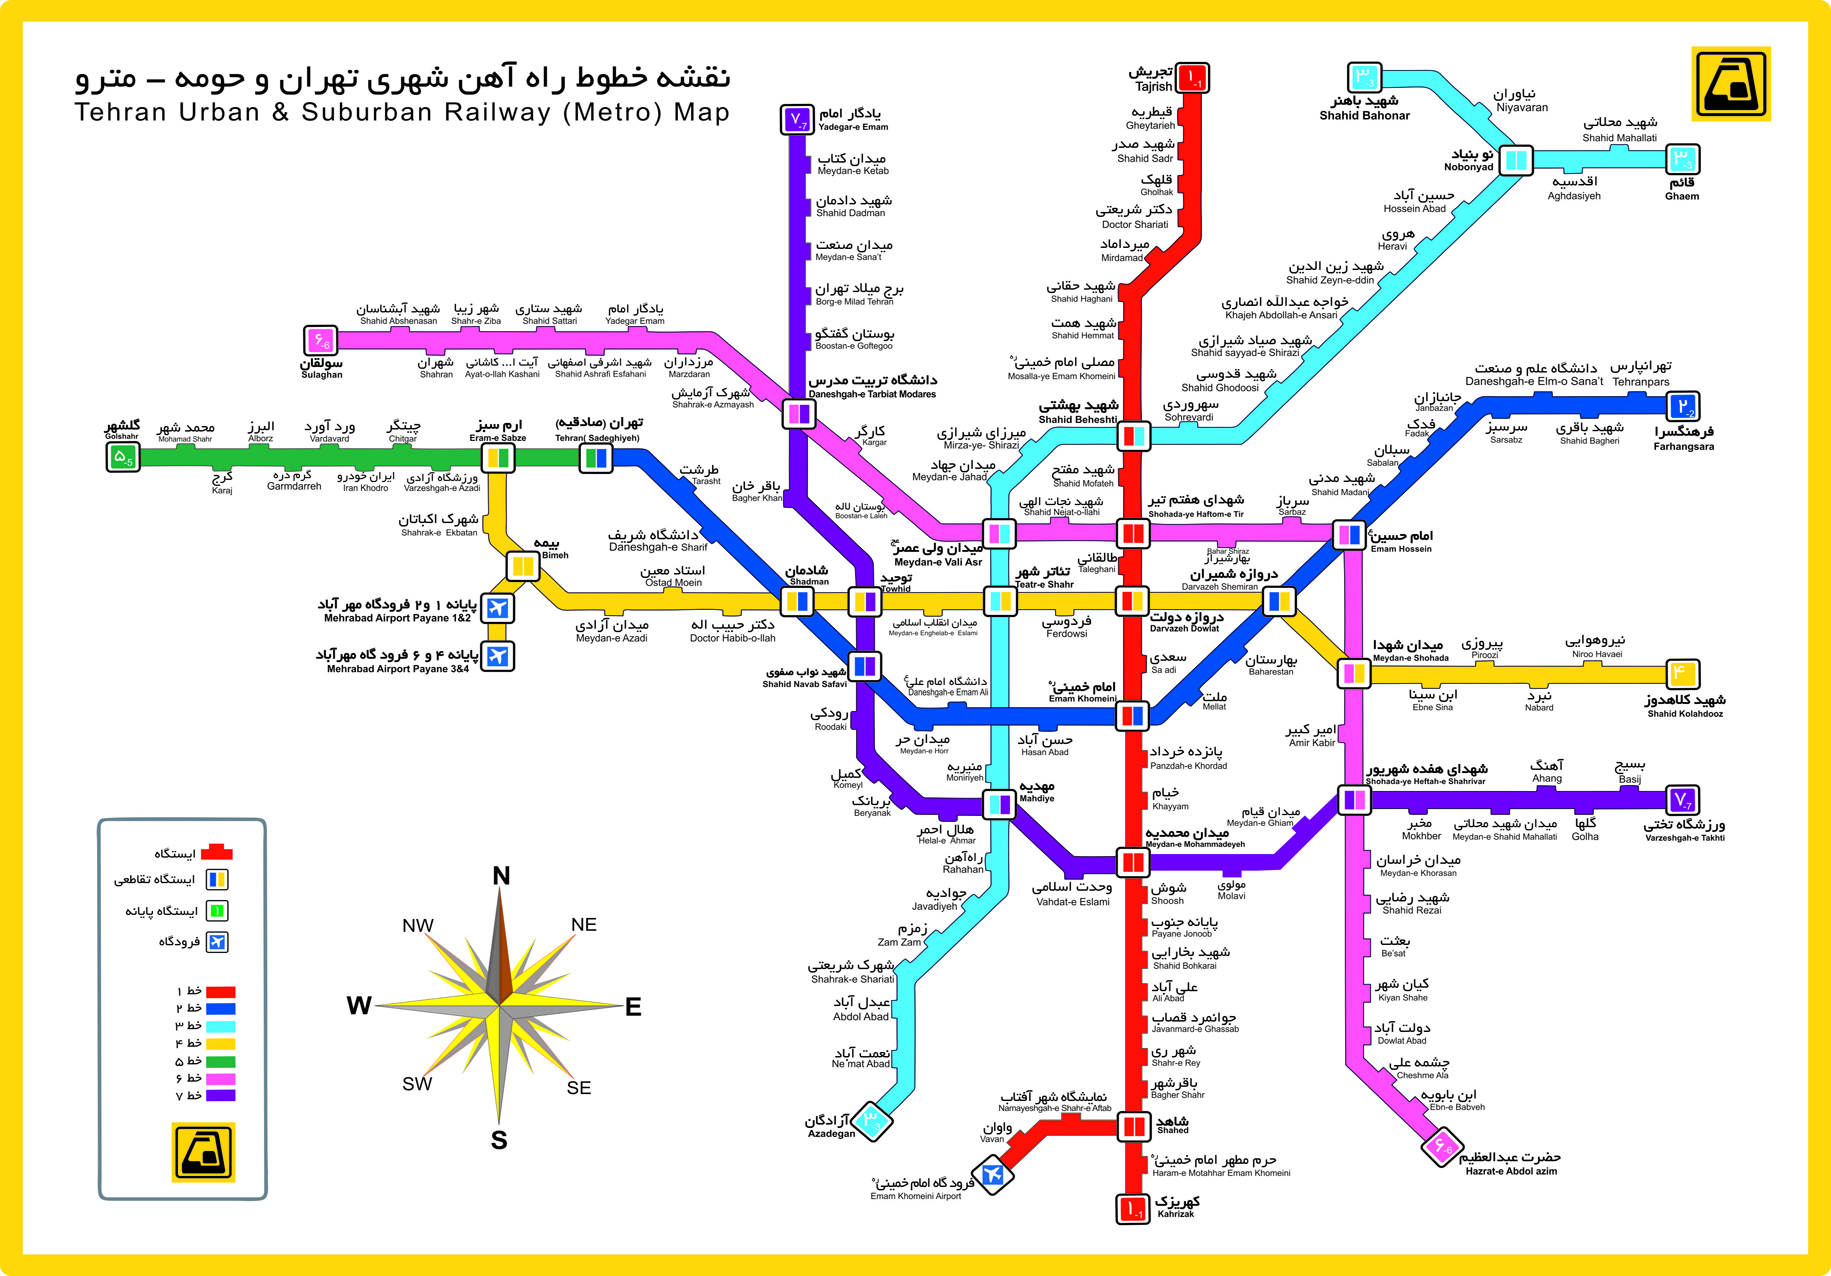 عکس ایستگاه های متروی تهران